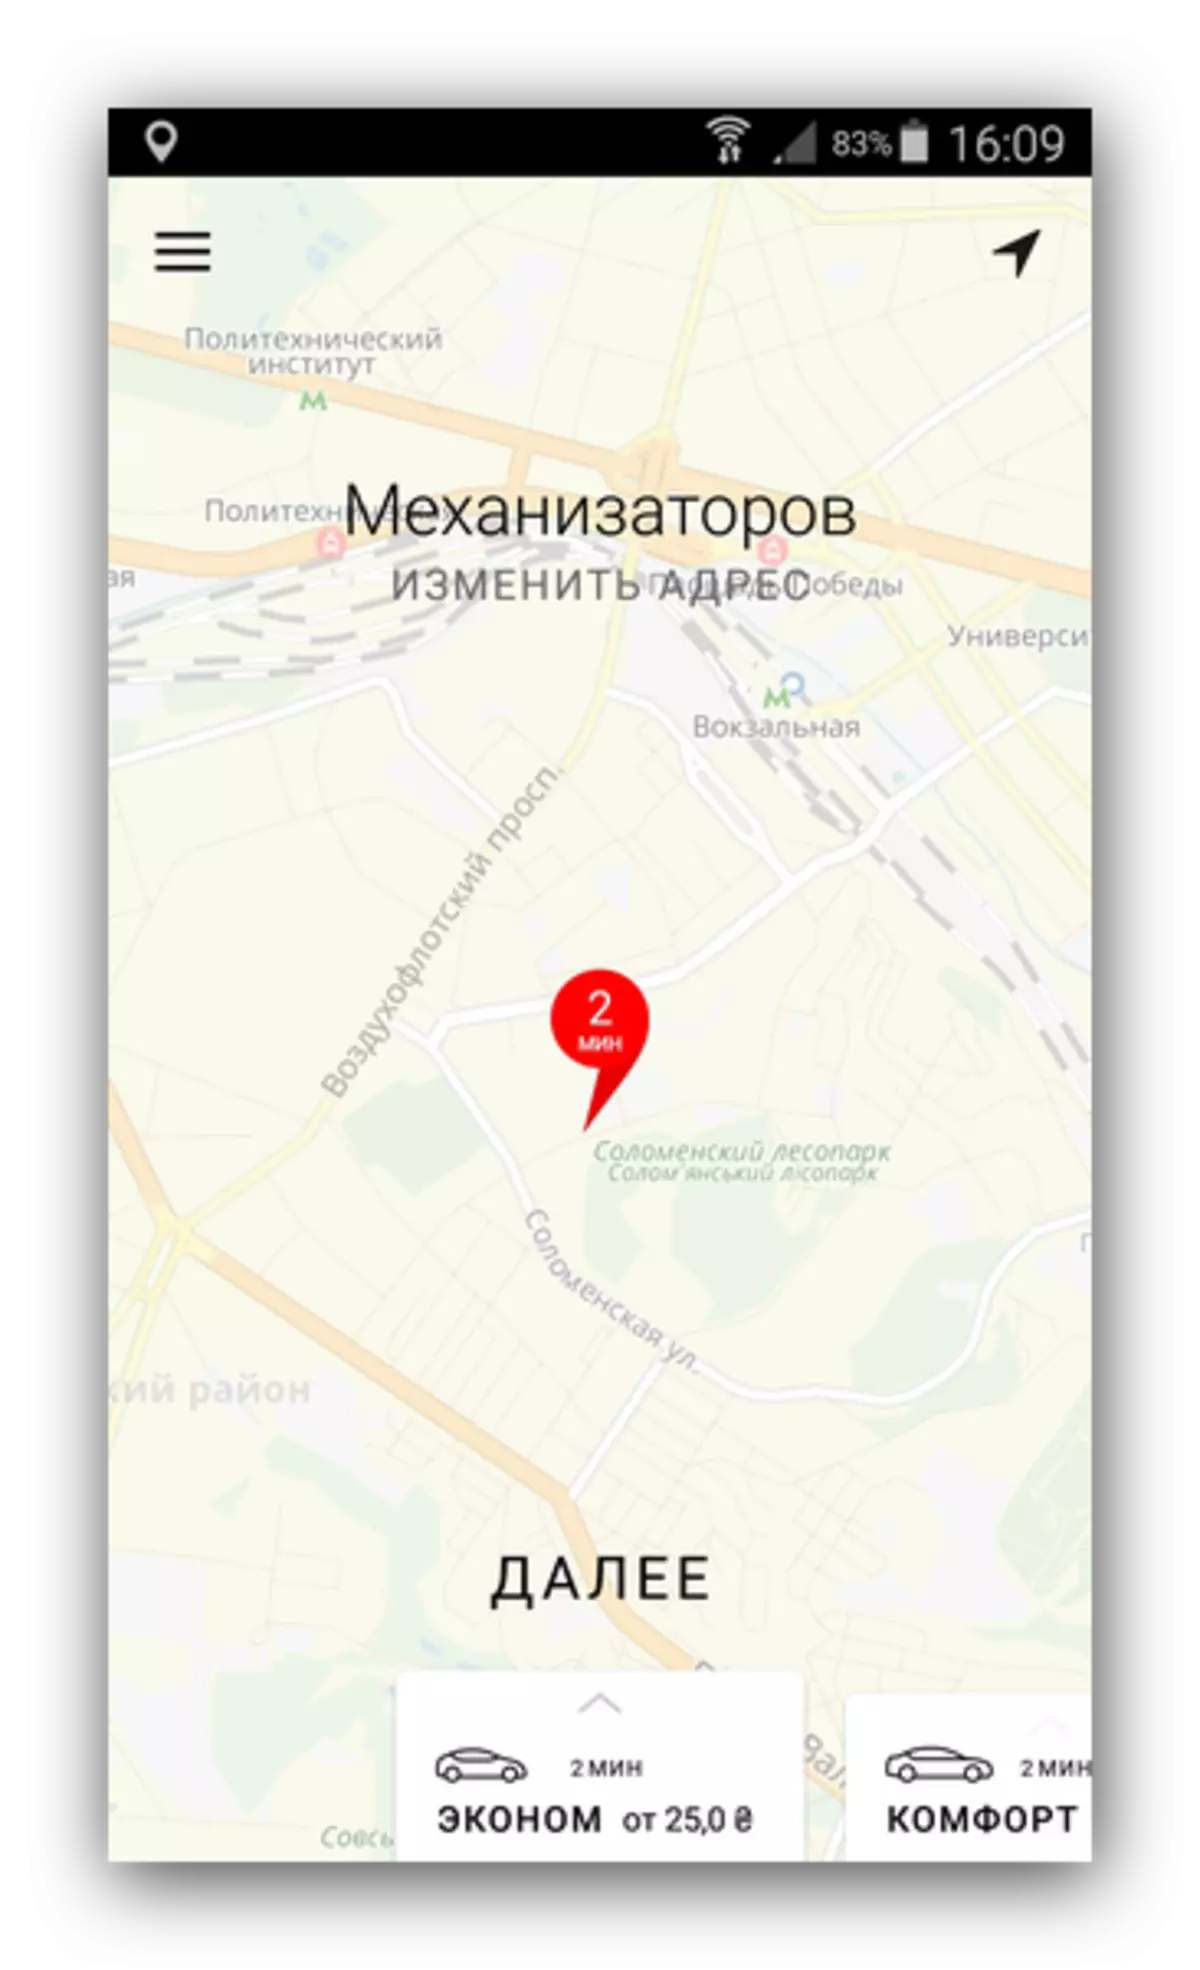 Tafipator Ganti Taxi Yandex